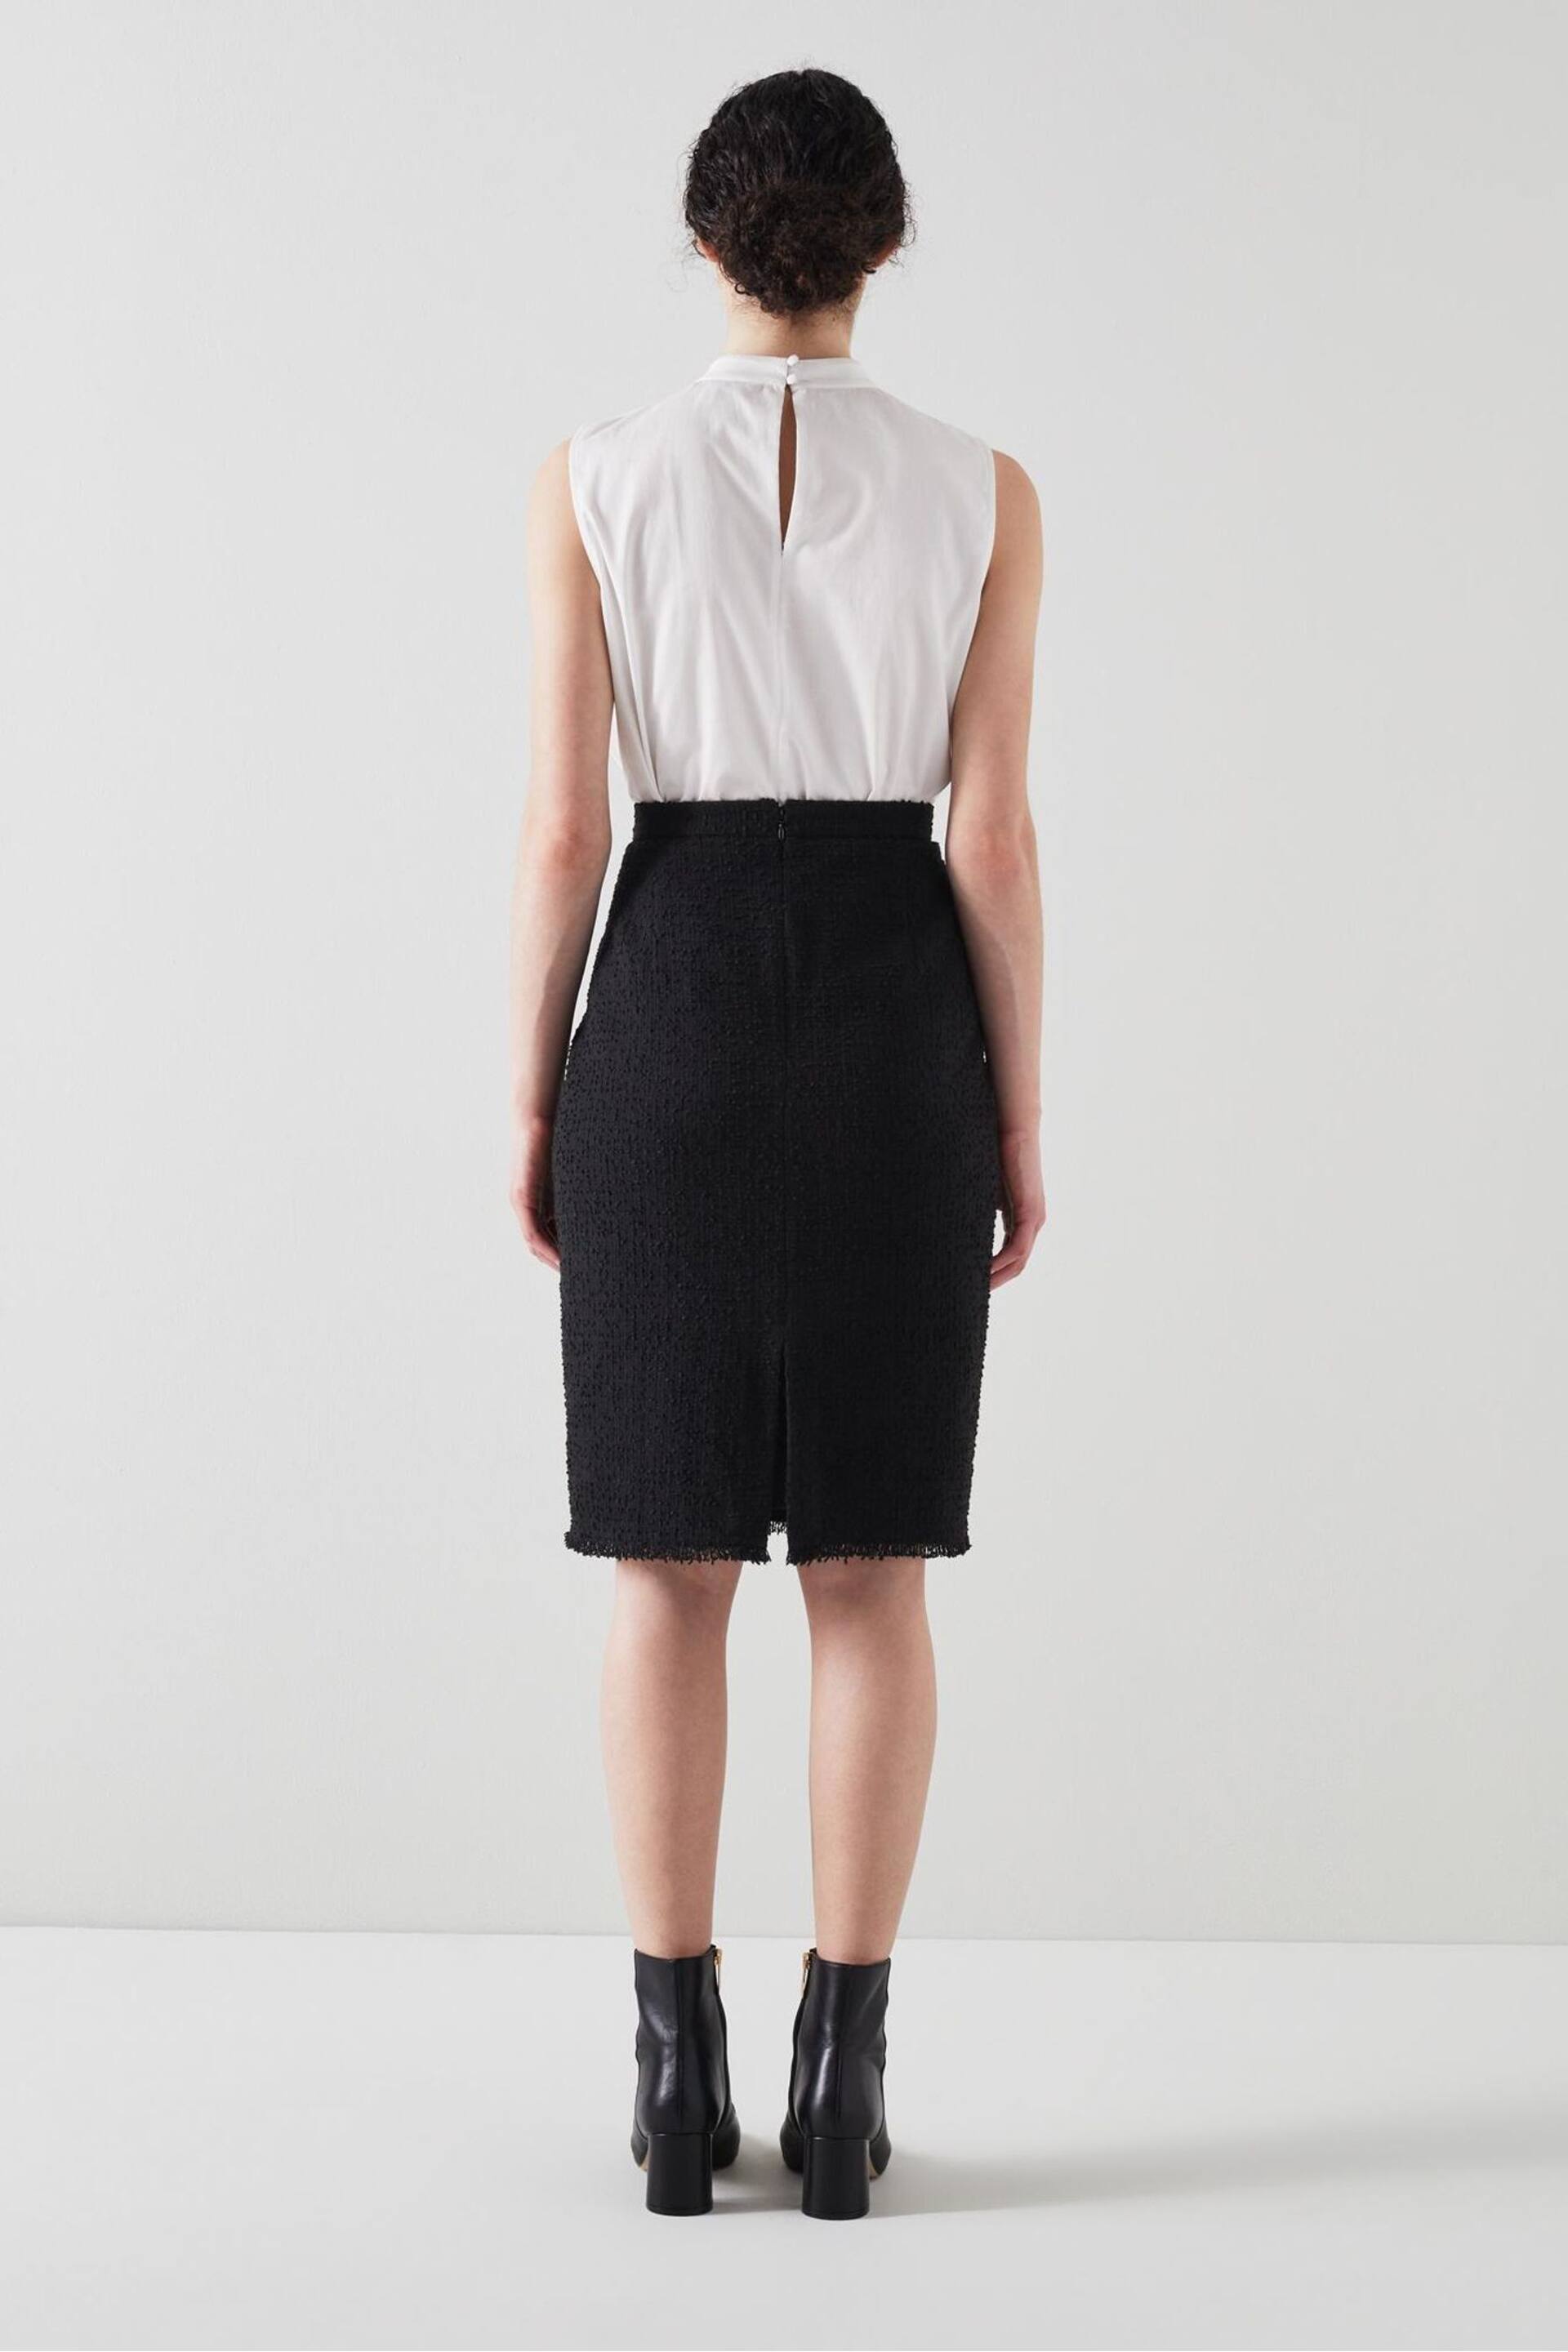 LK Bennett Lara Cotton Italian Tweed Skirt - Image 4 of 6